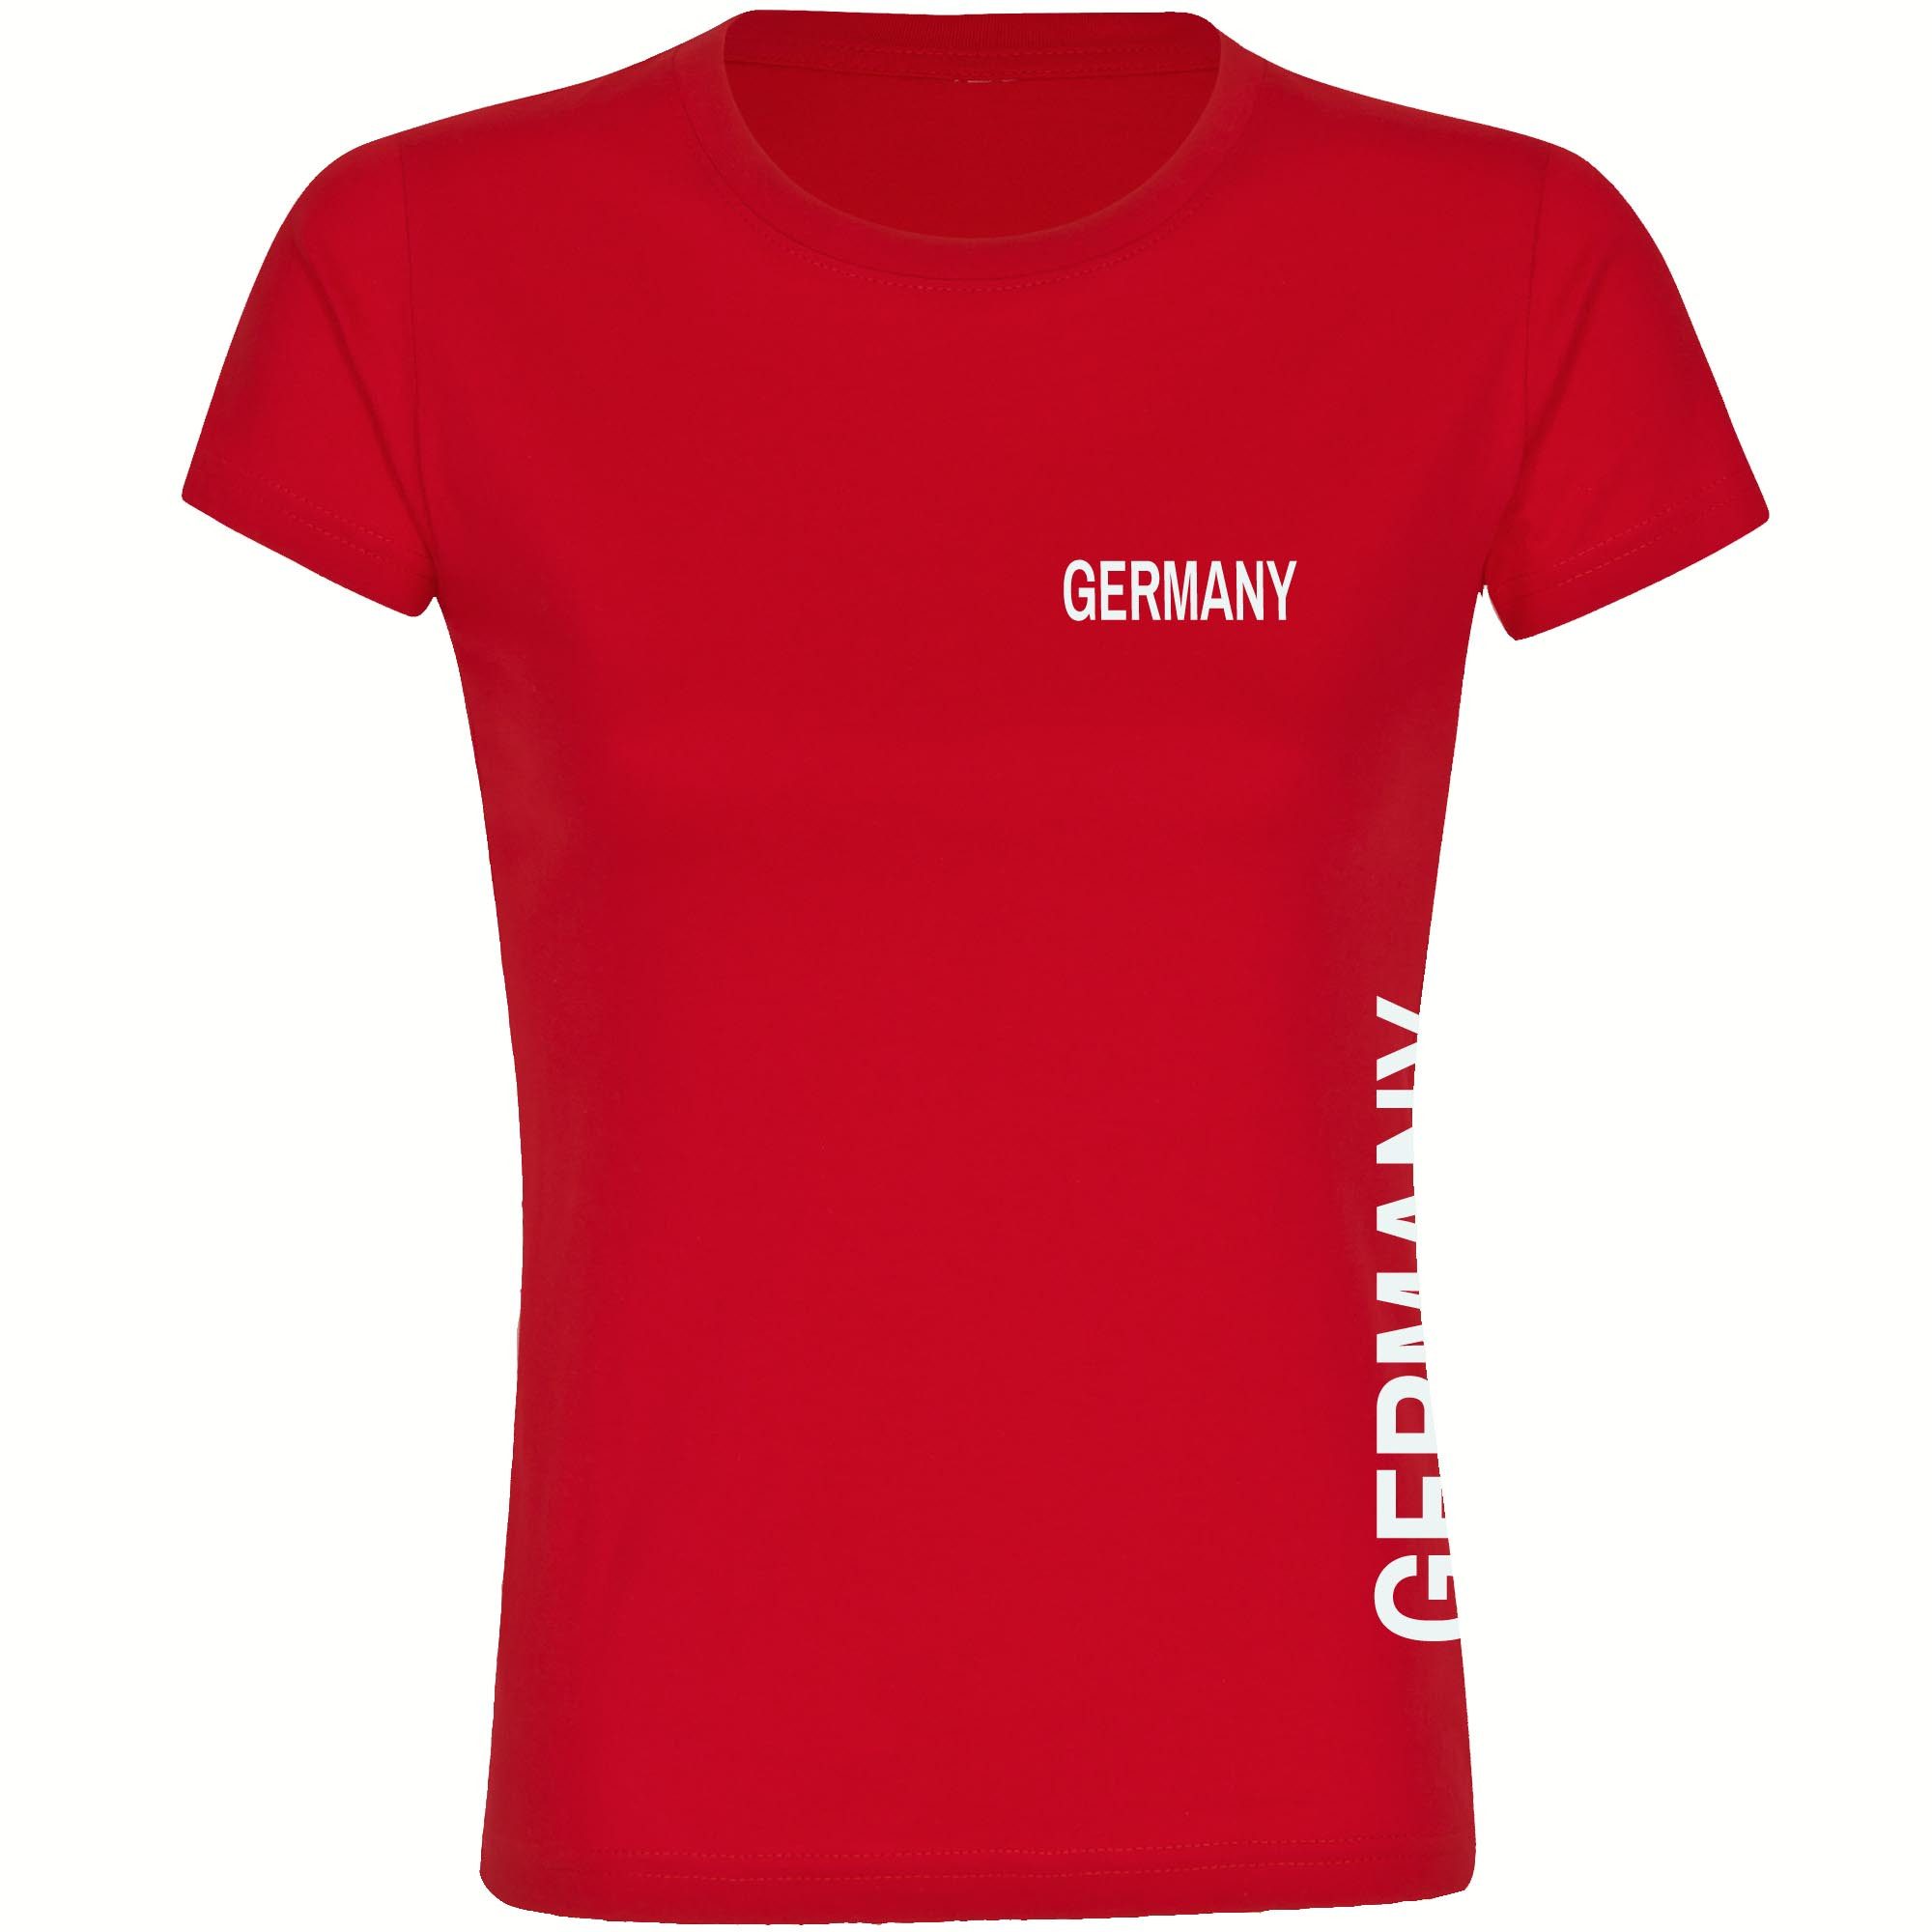 multifanshop T-Shirt Damen Germany - Brust & Seite - Frauen